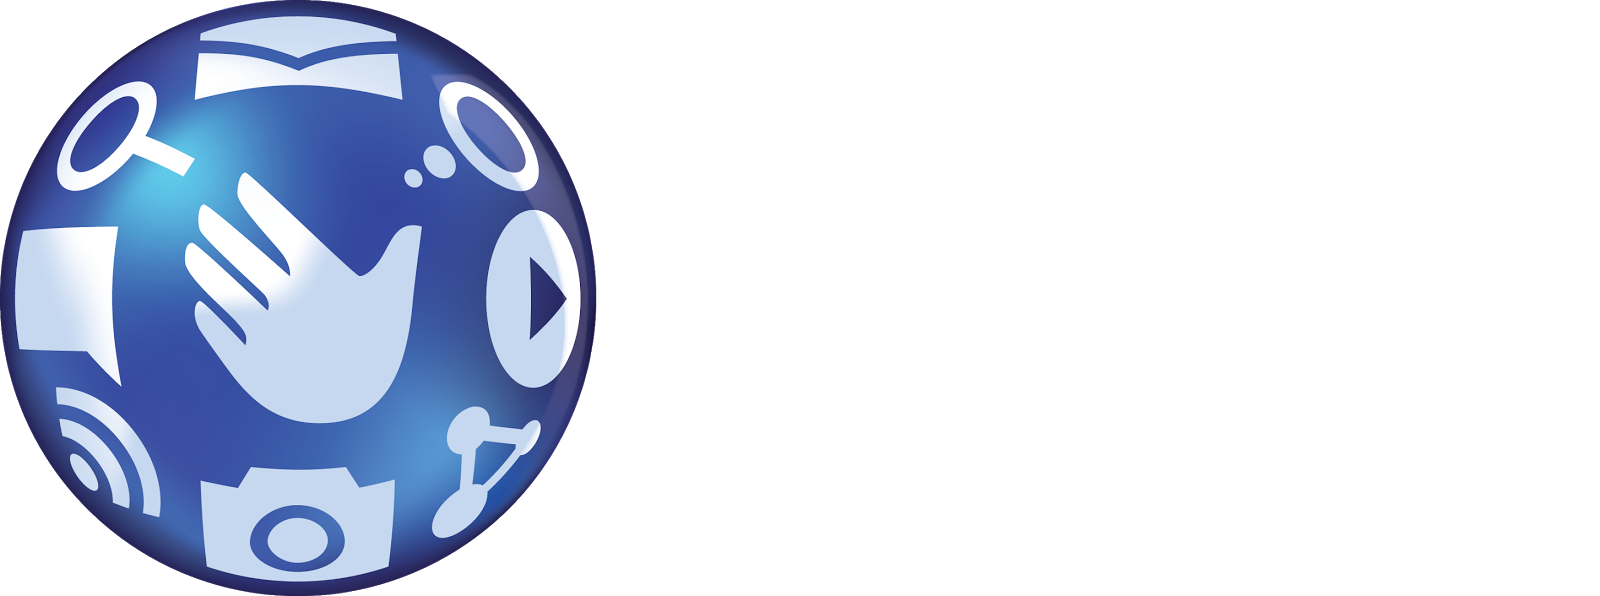 globe telecom logo - ClipArt Best - ClipArt Best